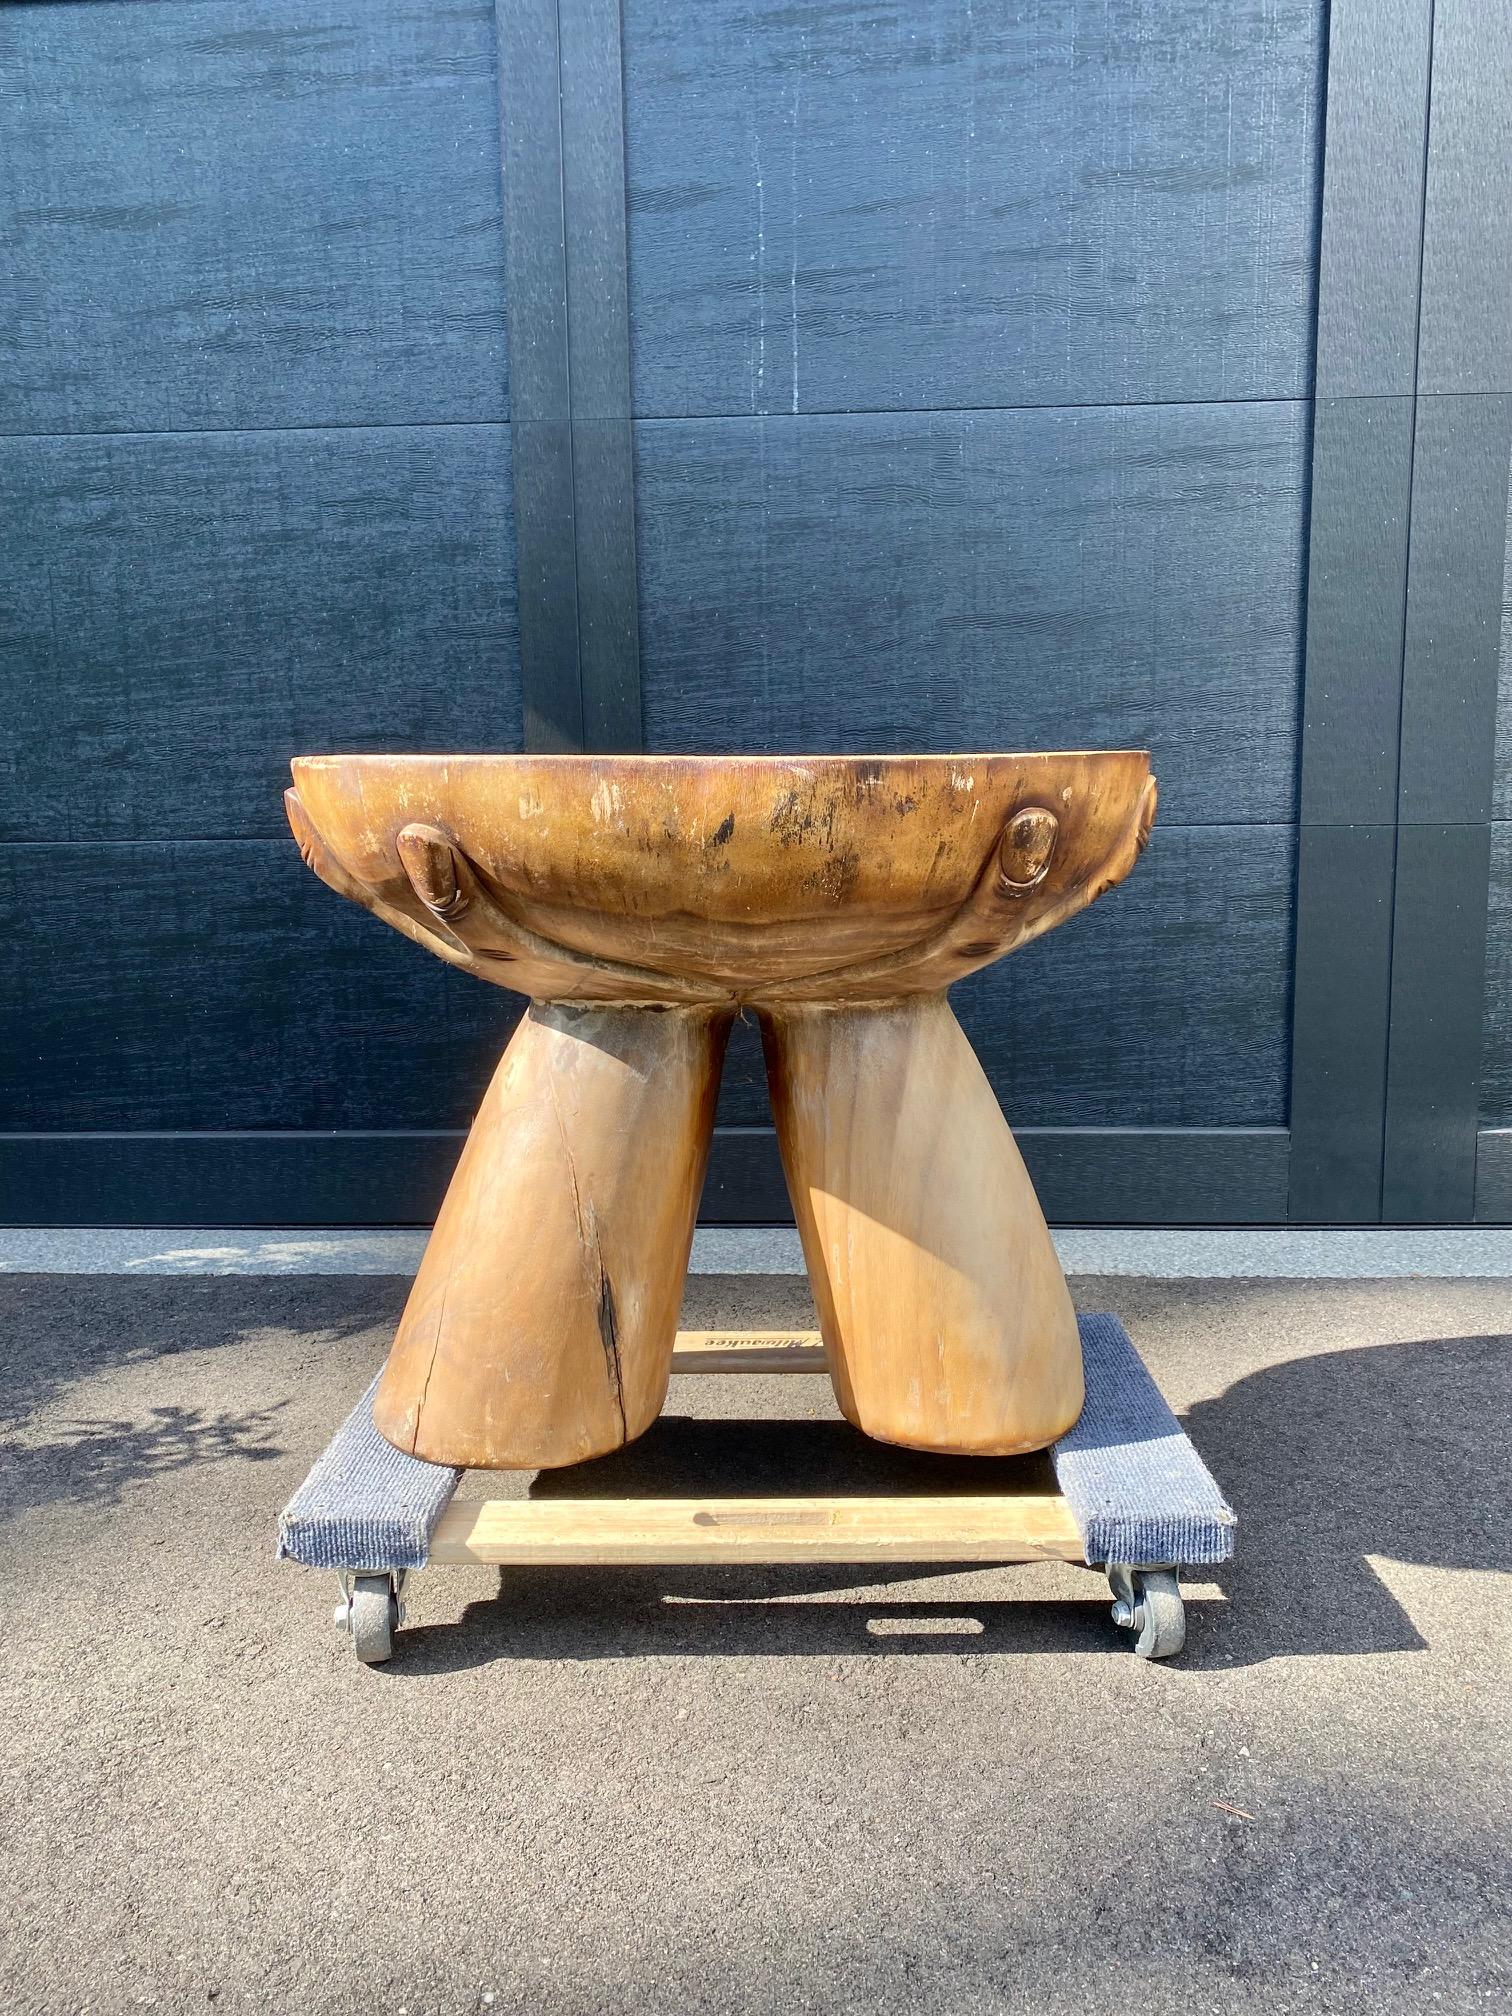 Une table d'appoint en bois étonnante, fabriquée à la main à partir d'une souche d'arbre unique façonnée en un motif de main. Une excellente pièce de travail primitif montrant un véritable savoir-faire - une pièce unique à posséder.